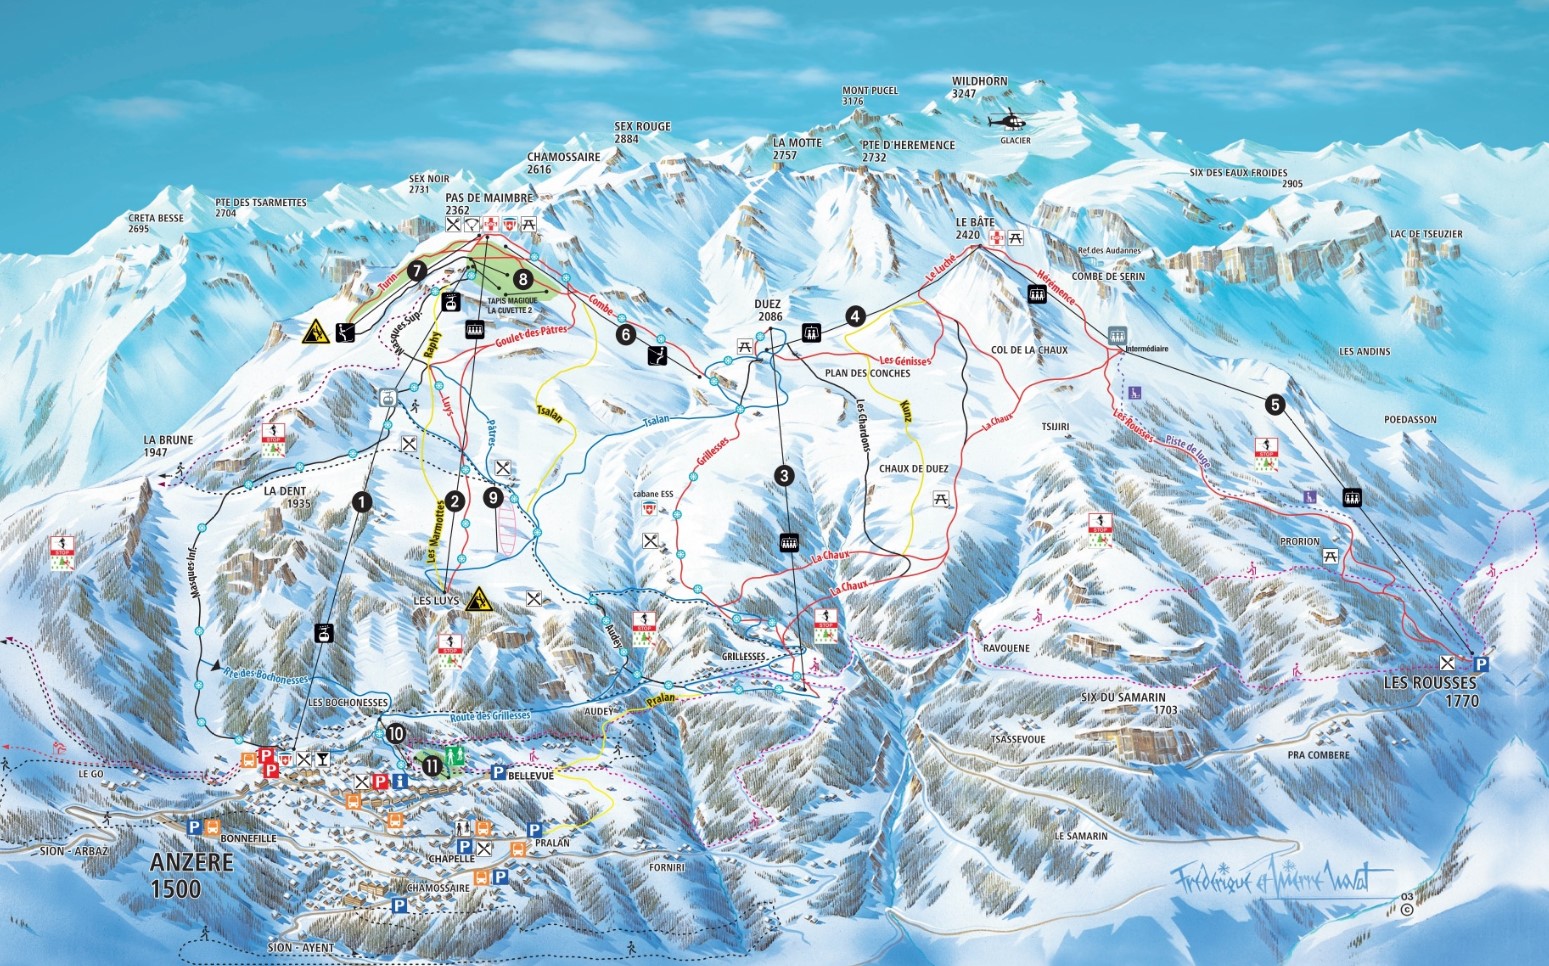 Trail Map Anzere Ski Resort Switzerland